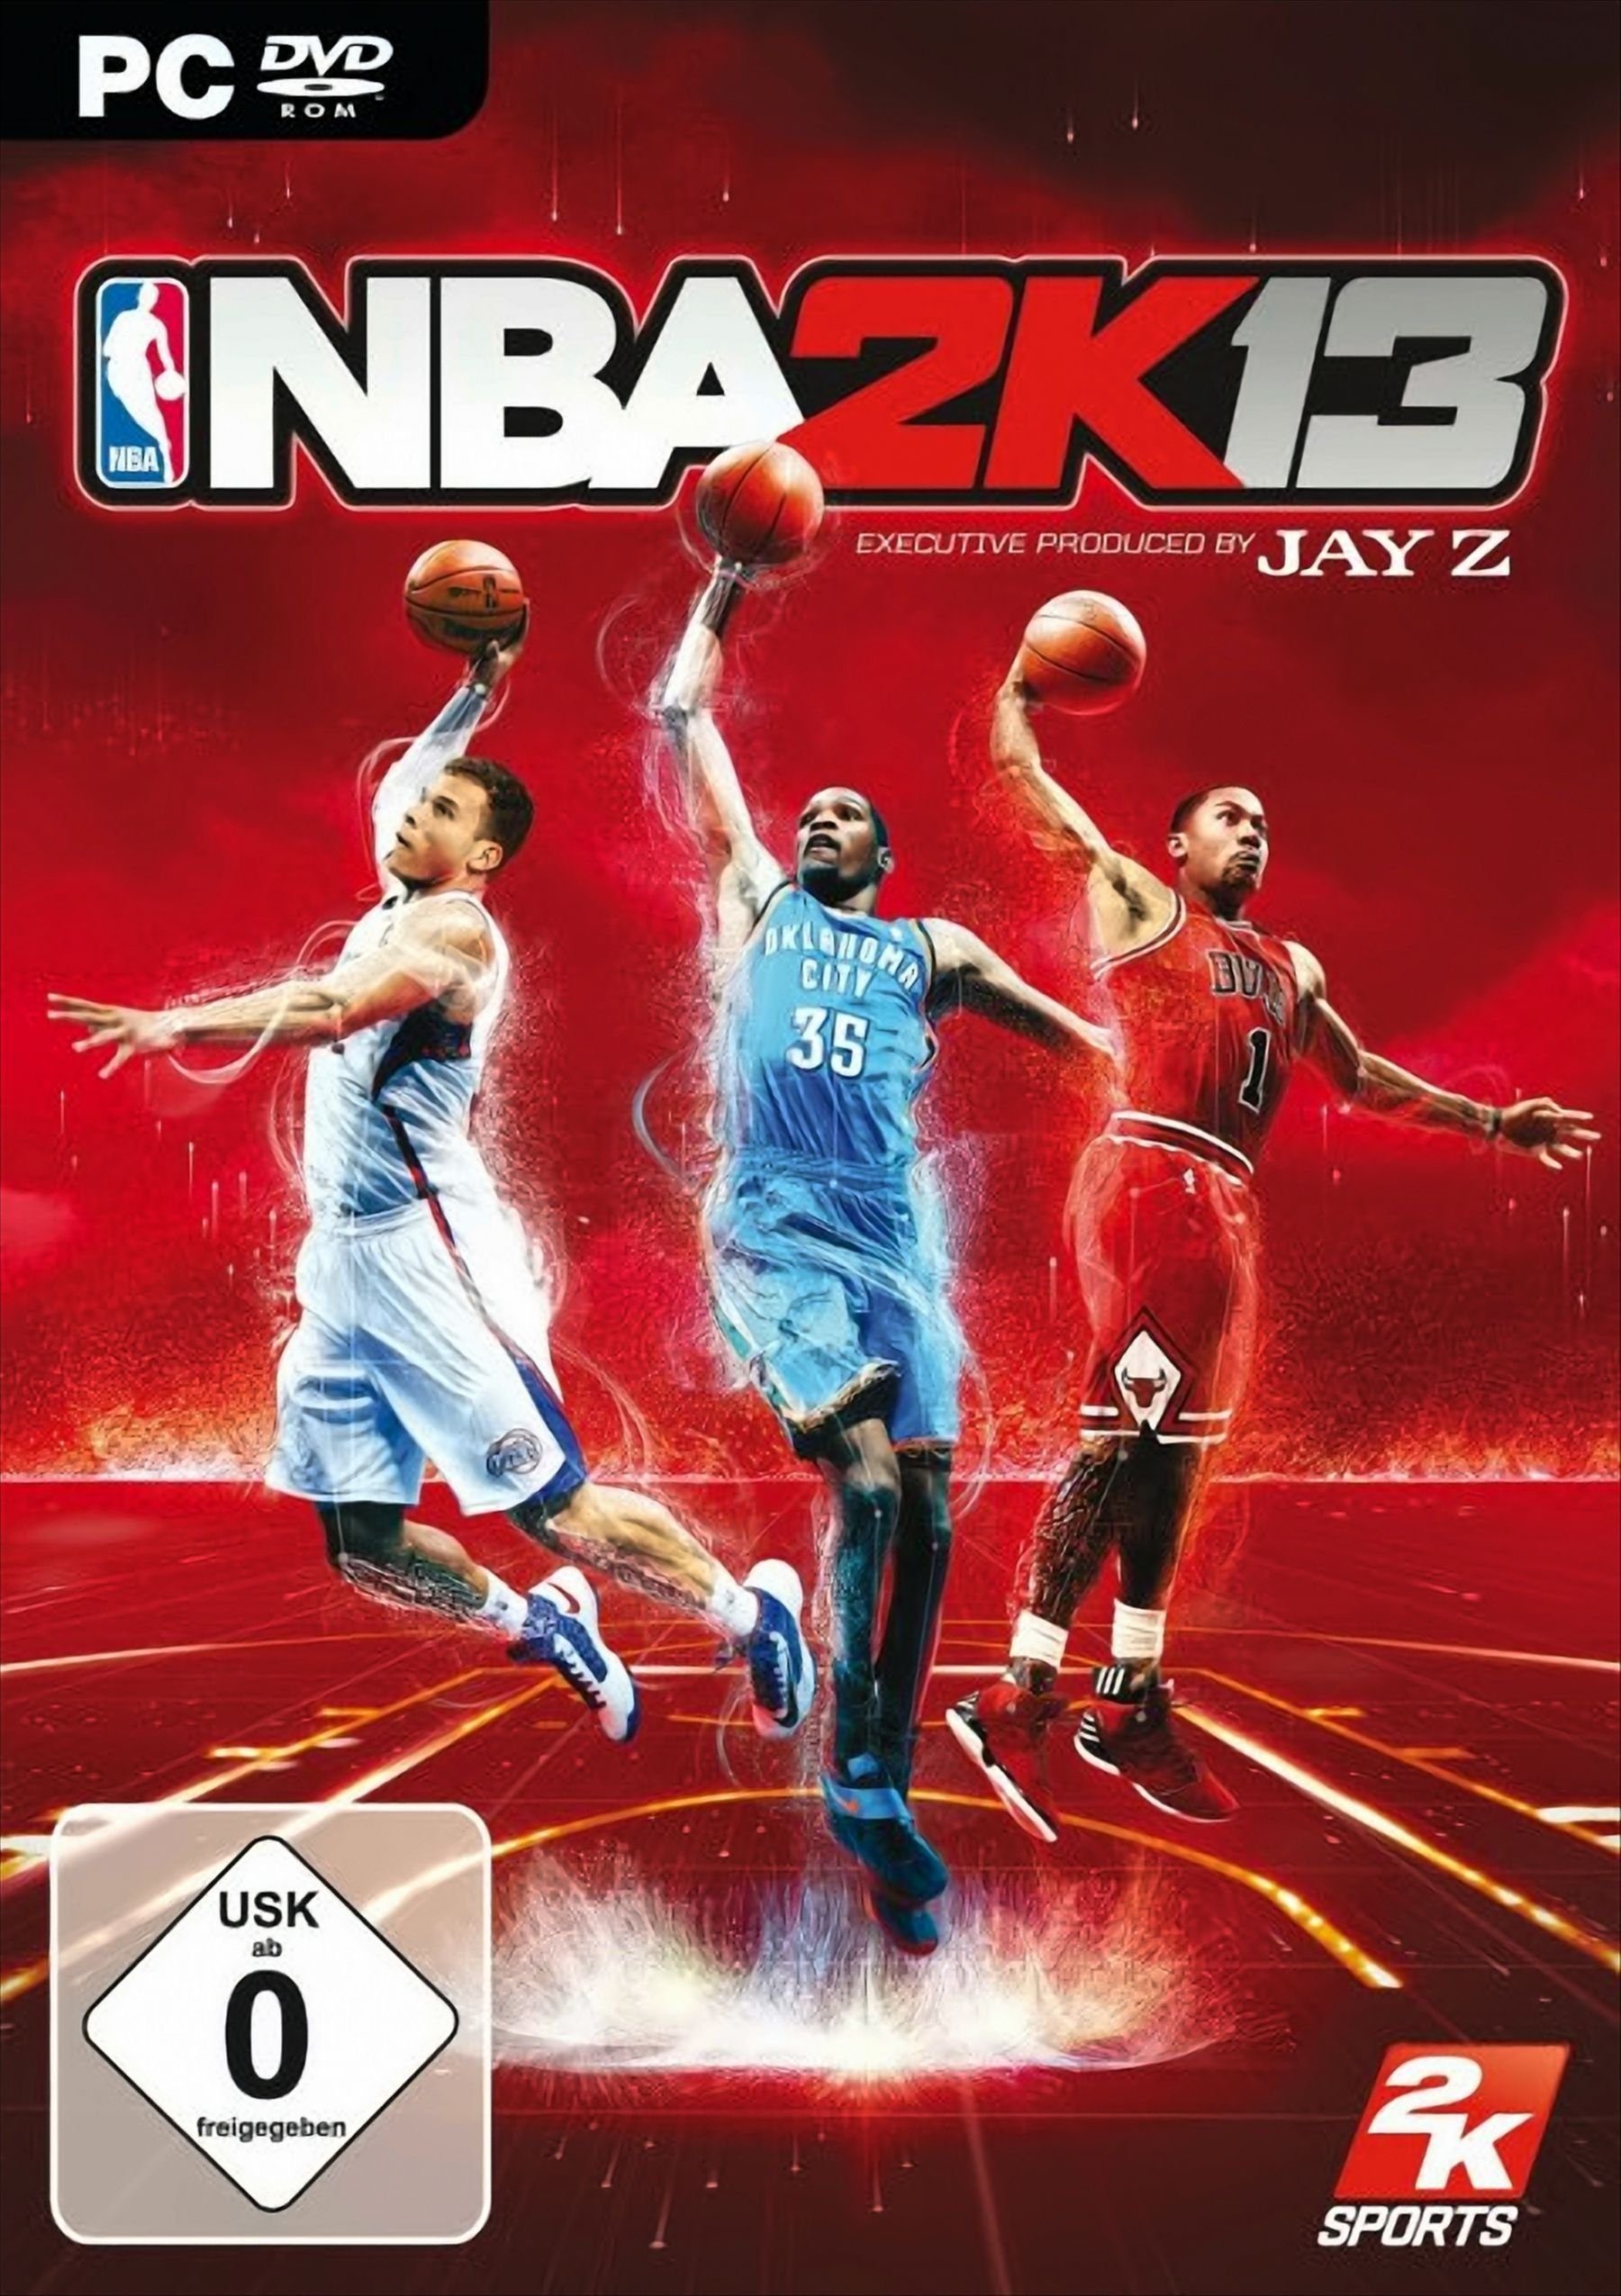 NBA 2K13 PC